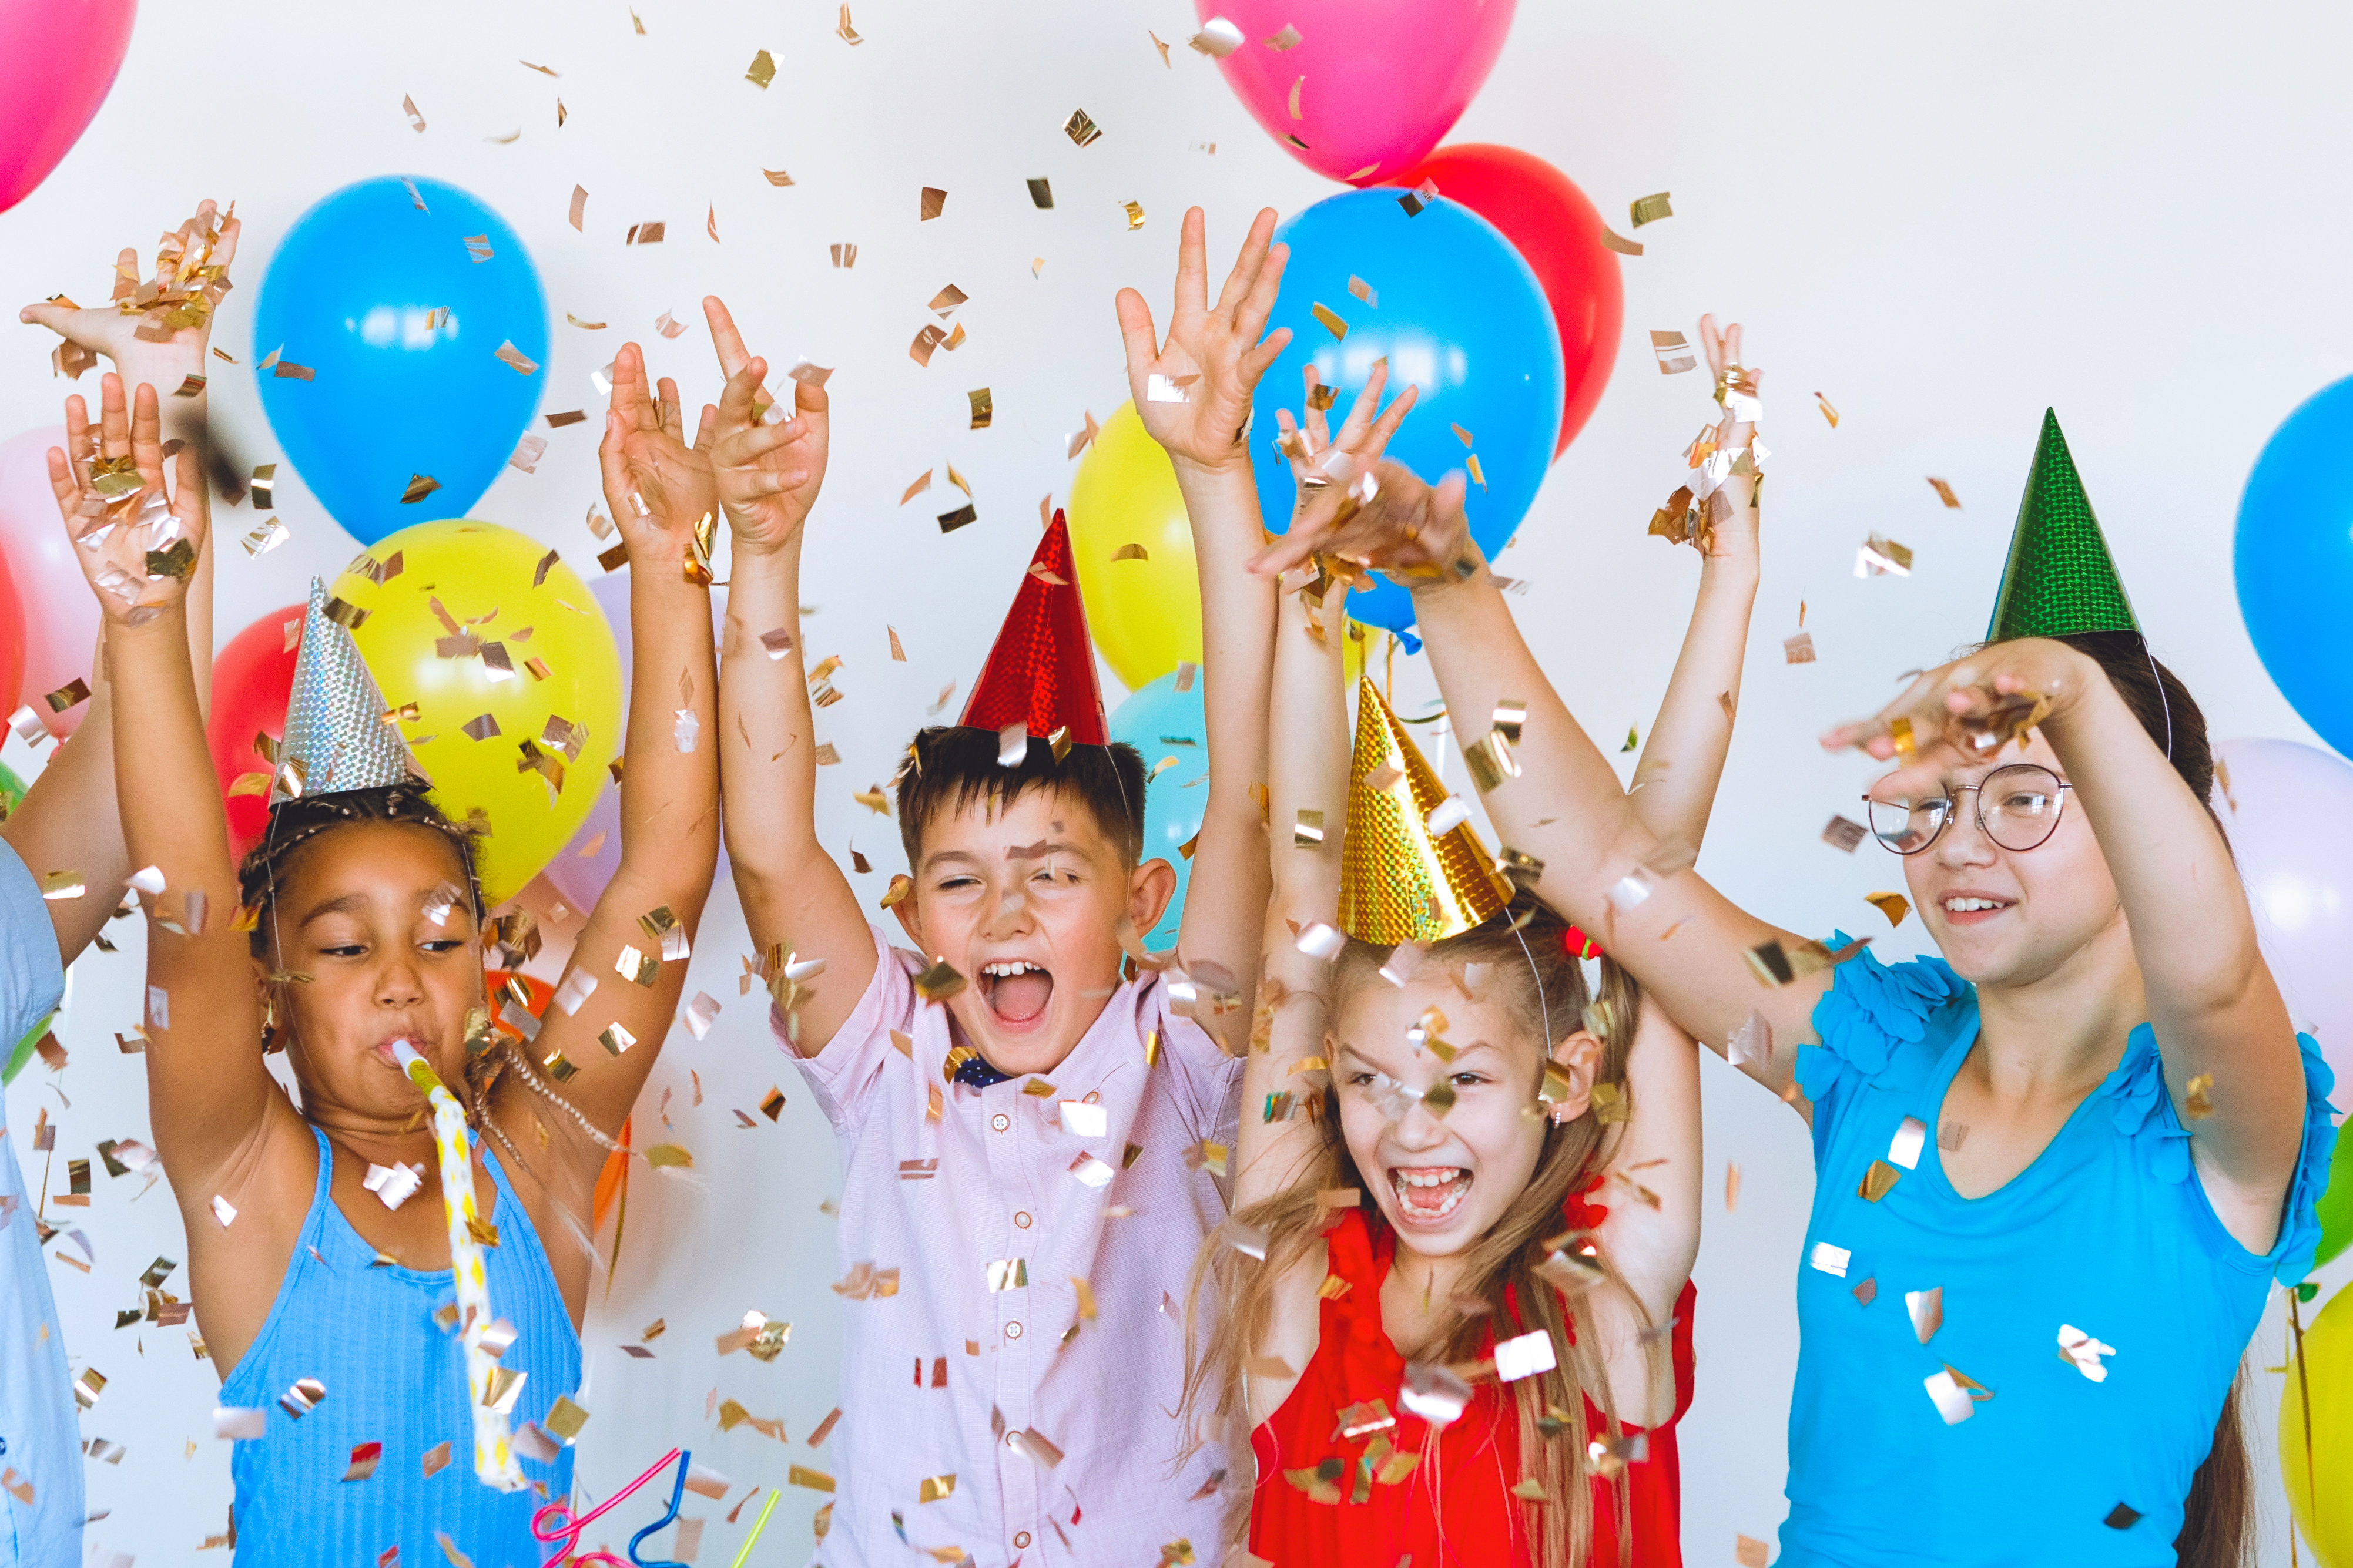 Joyeuse fête d'anniversaire | Source : Shutterstock